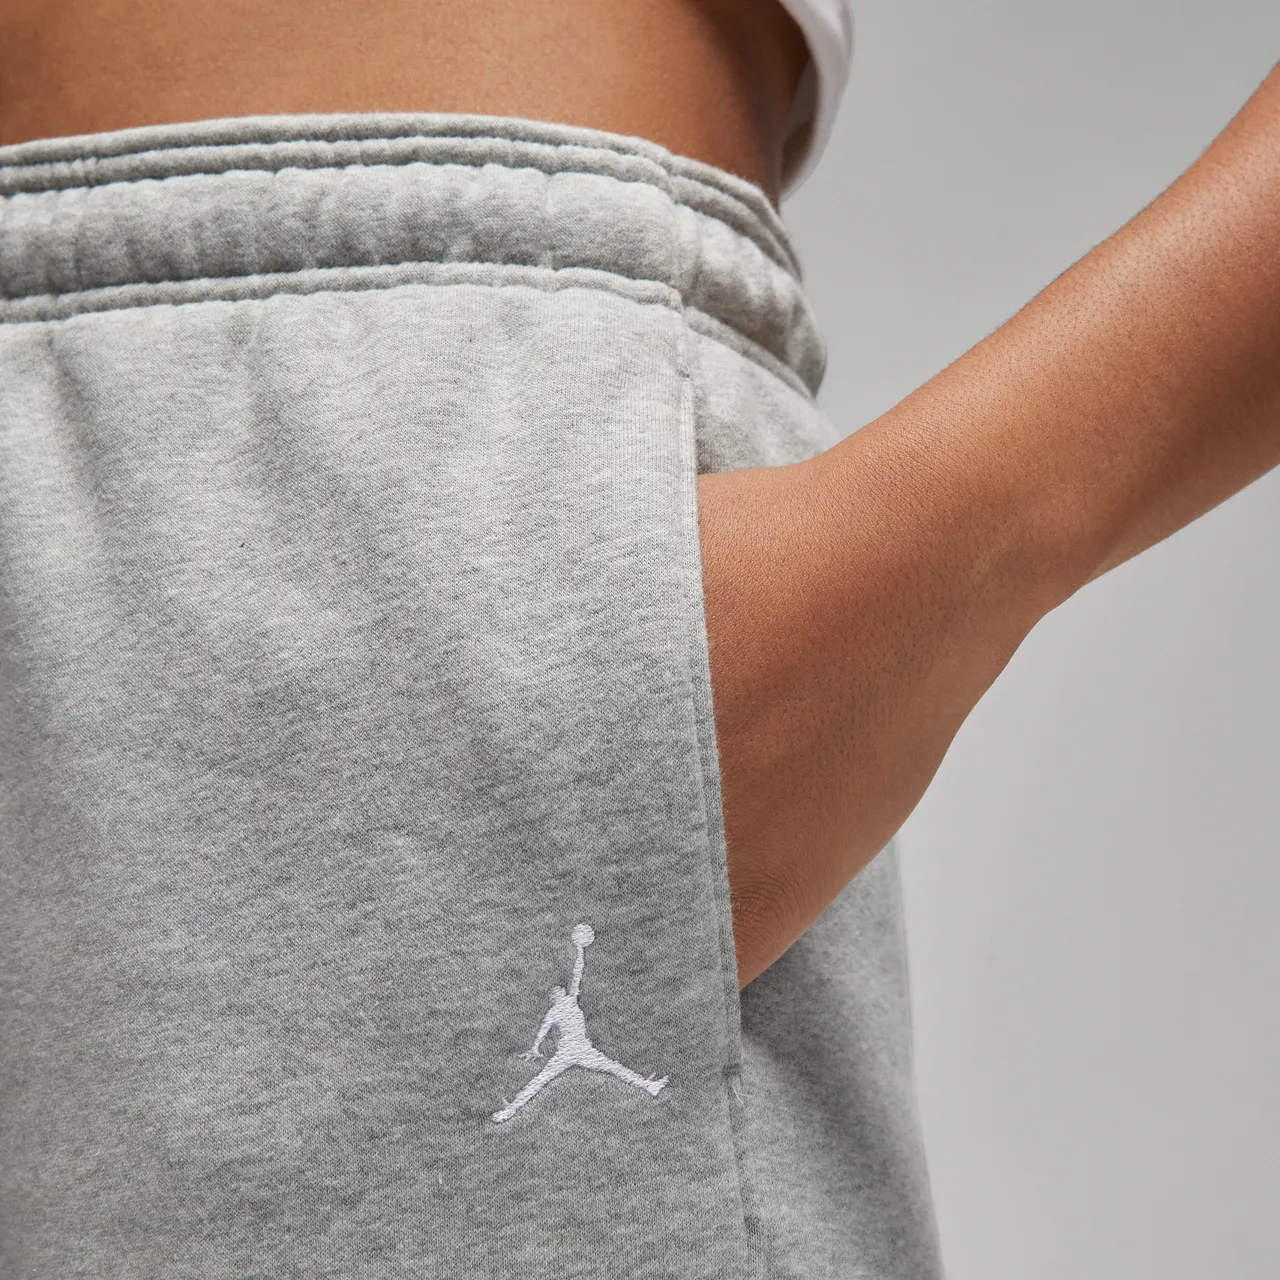 Jordan Brooklyn Fleece Women's Trousers - Grey - Cotton